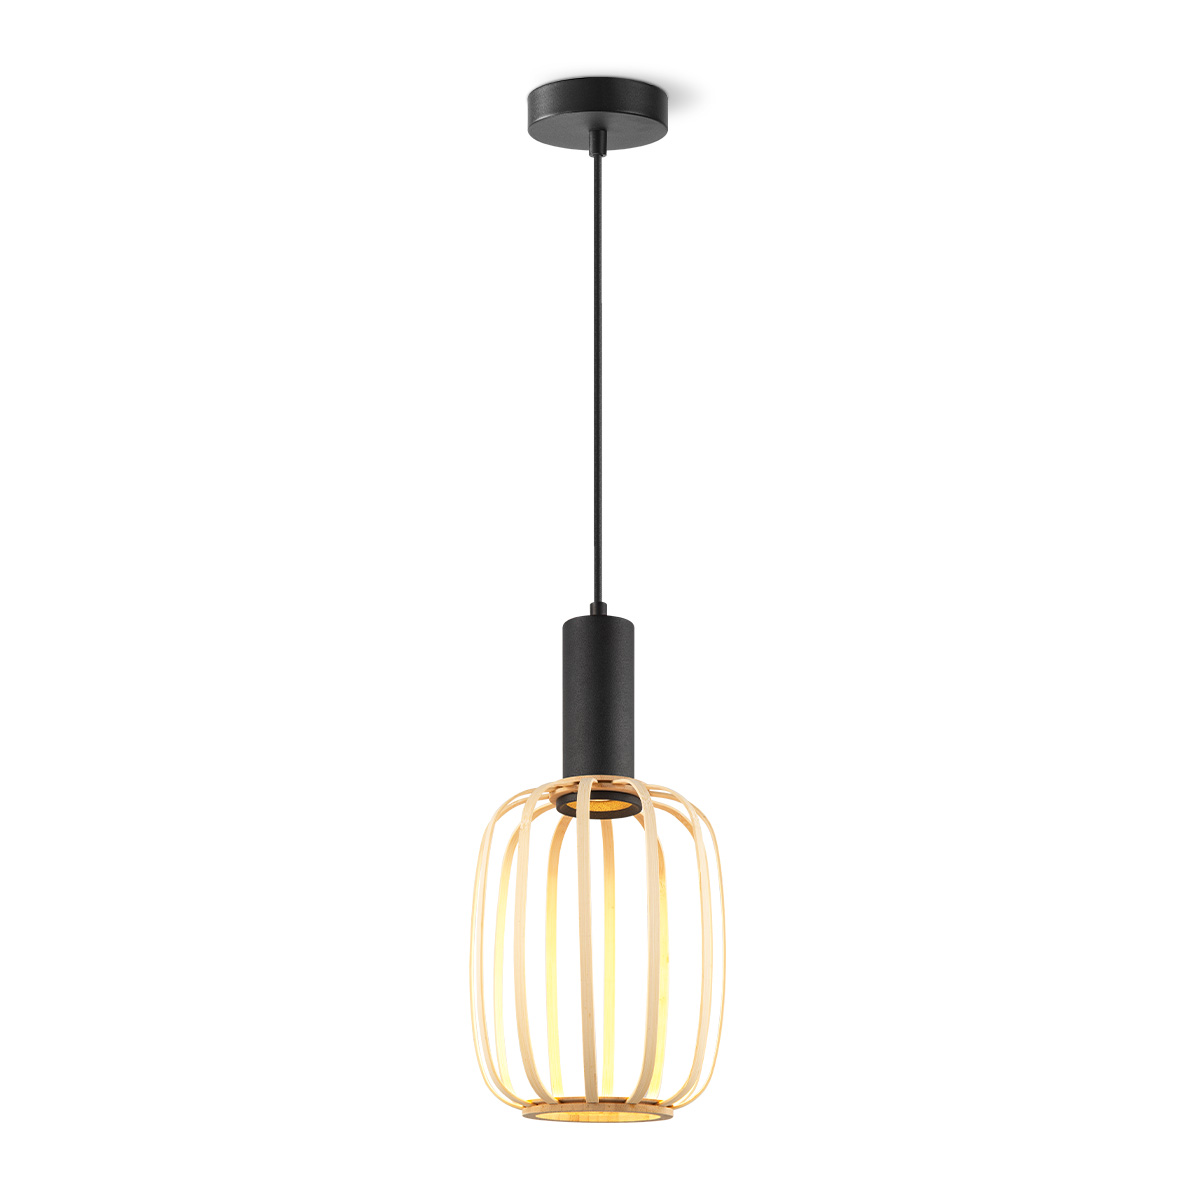 Tangla lighting - TLP7648-01NT - LED pendant lamp 1 light - FSC wooden lamp - natural - natural netting series